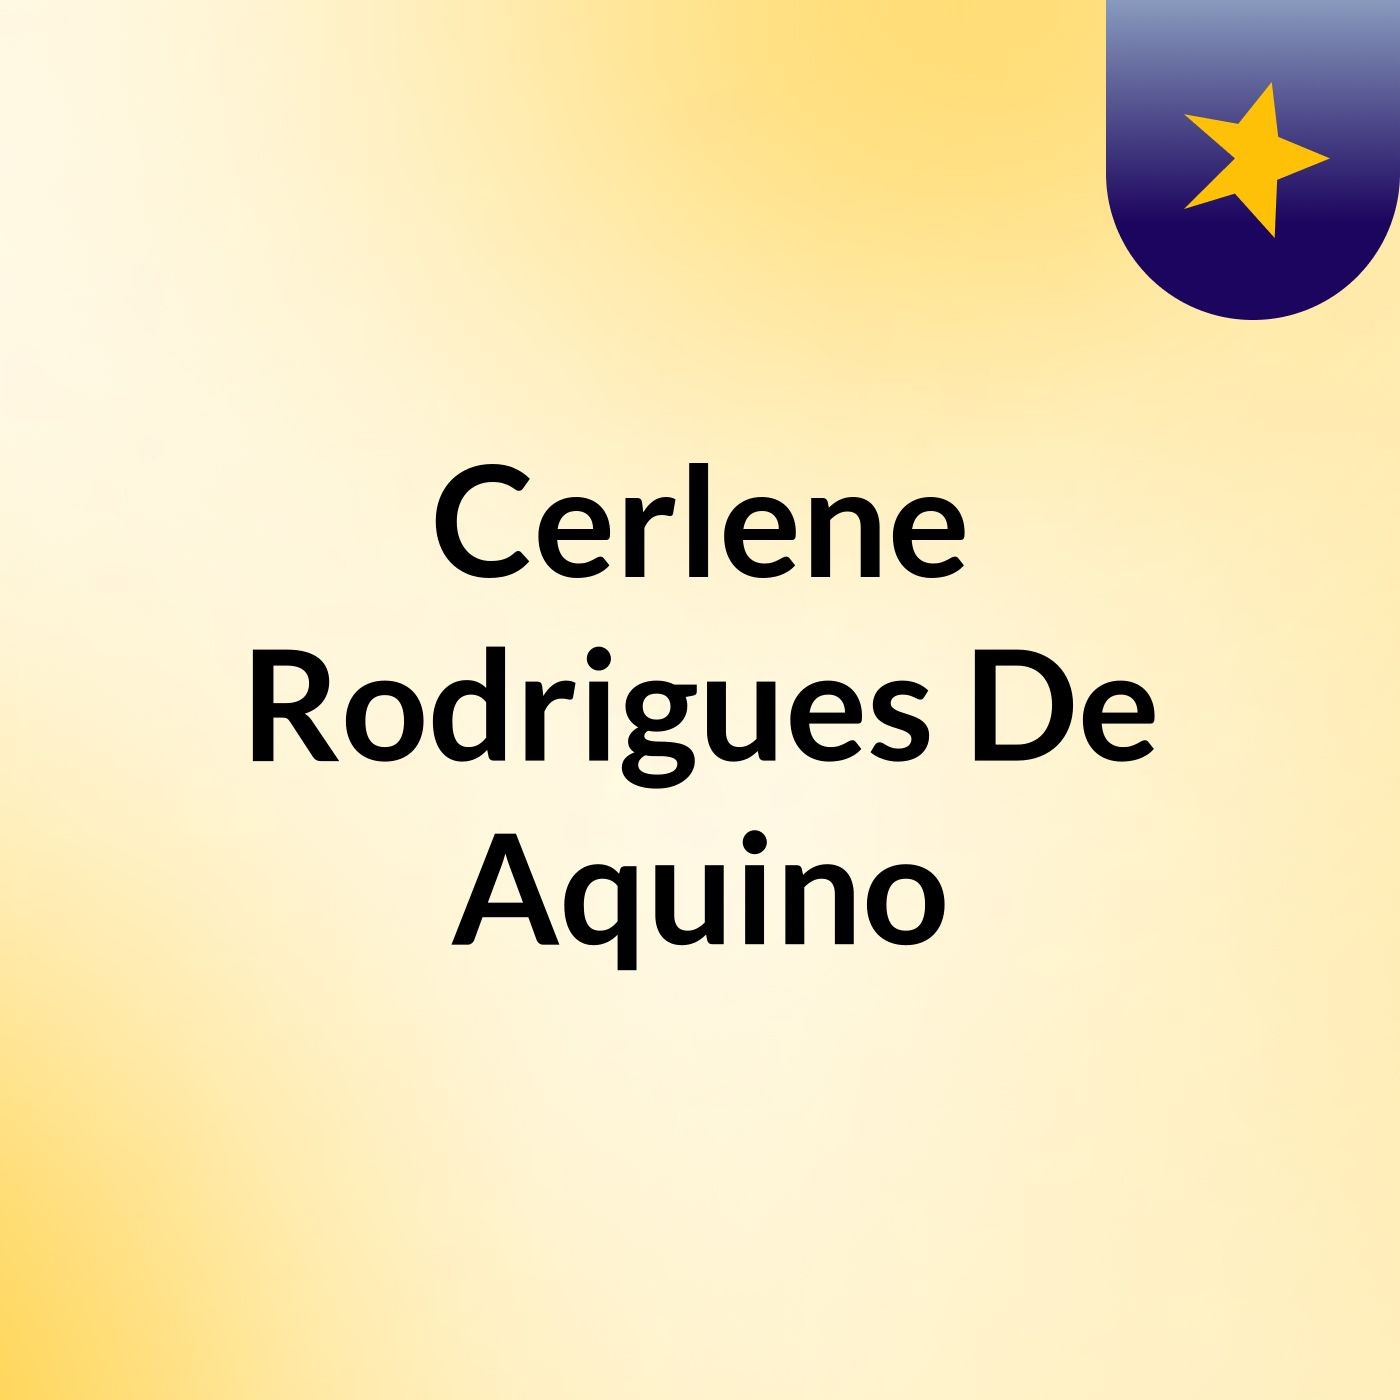 Cerlene Rodrigues De Aquino